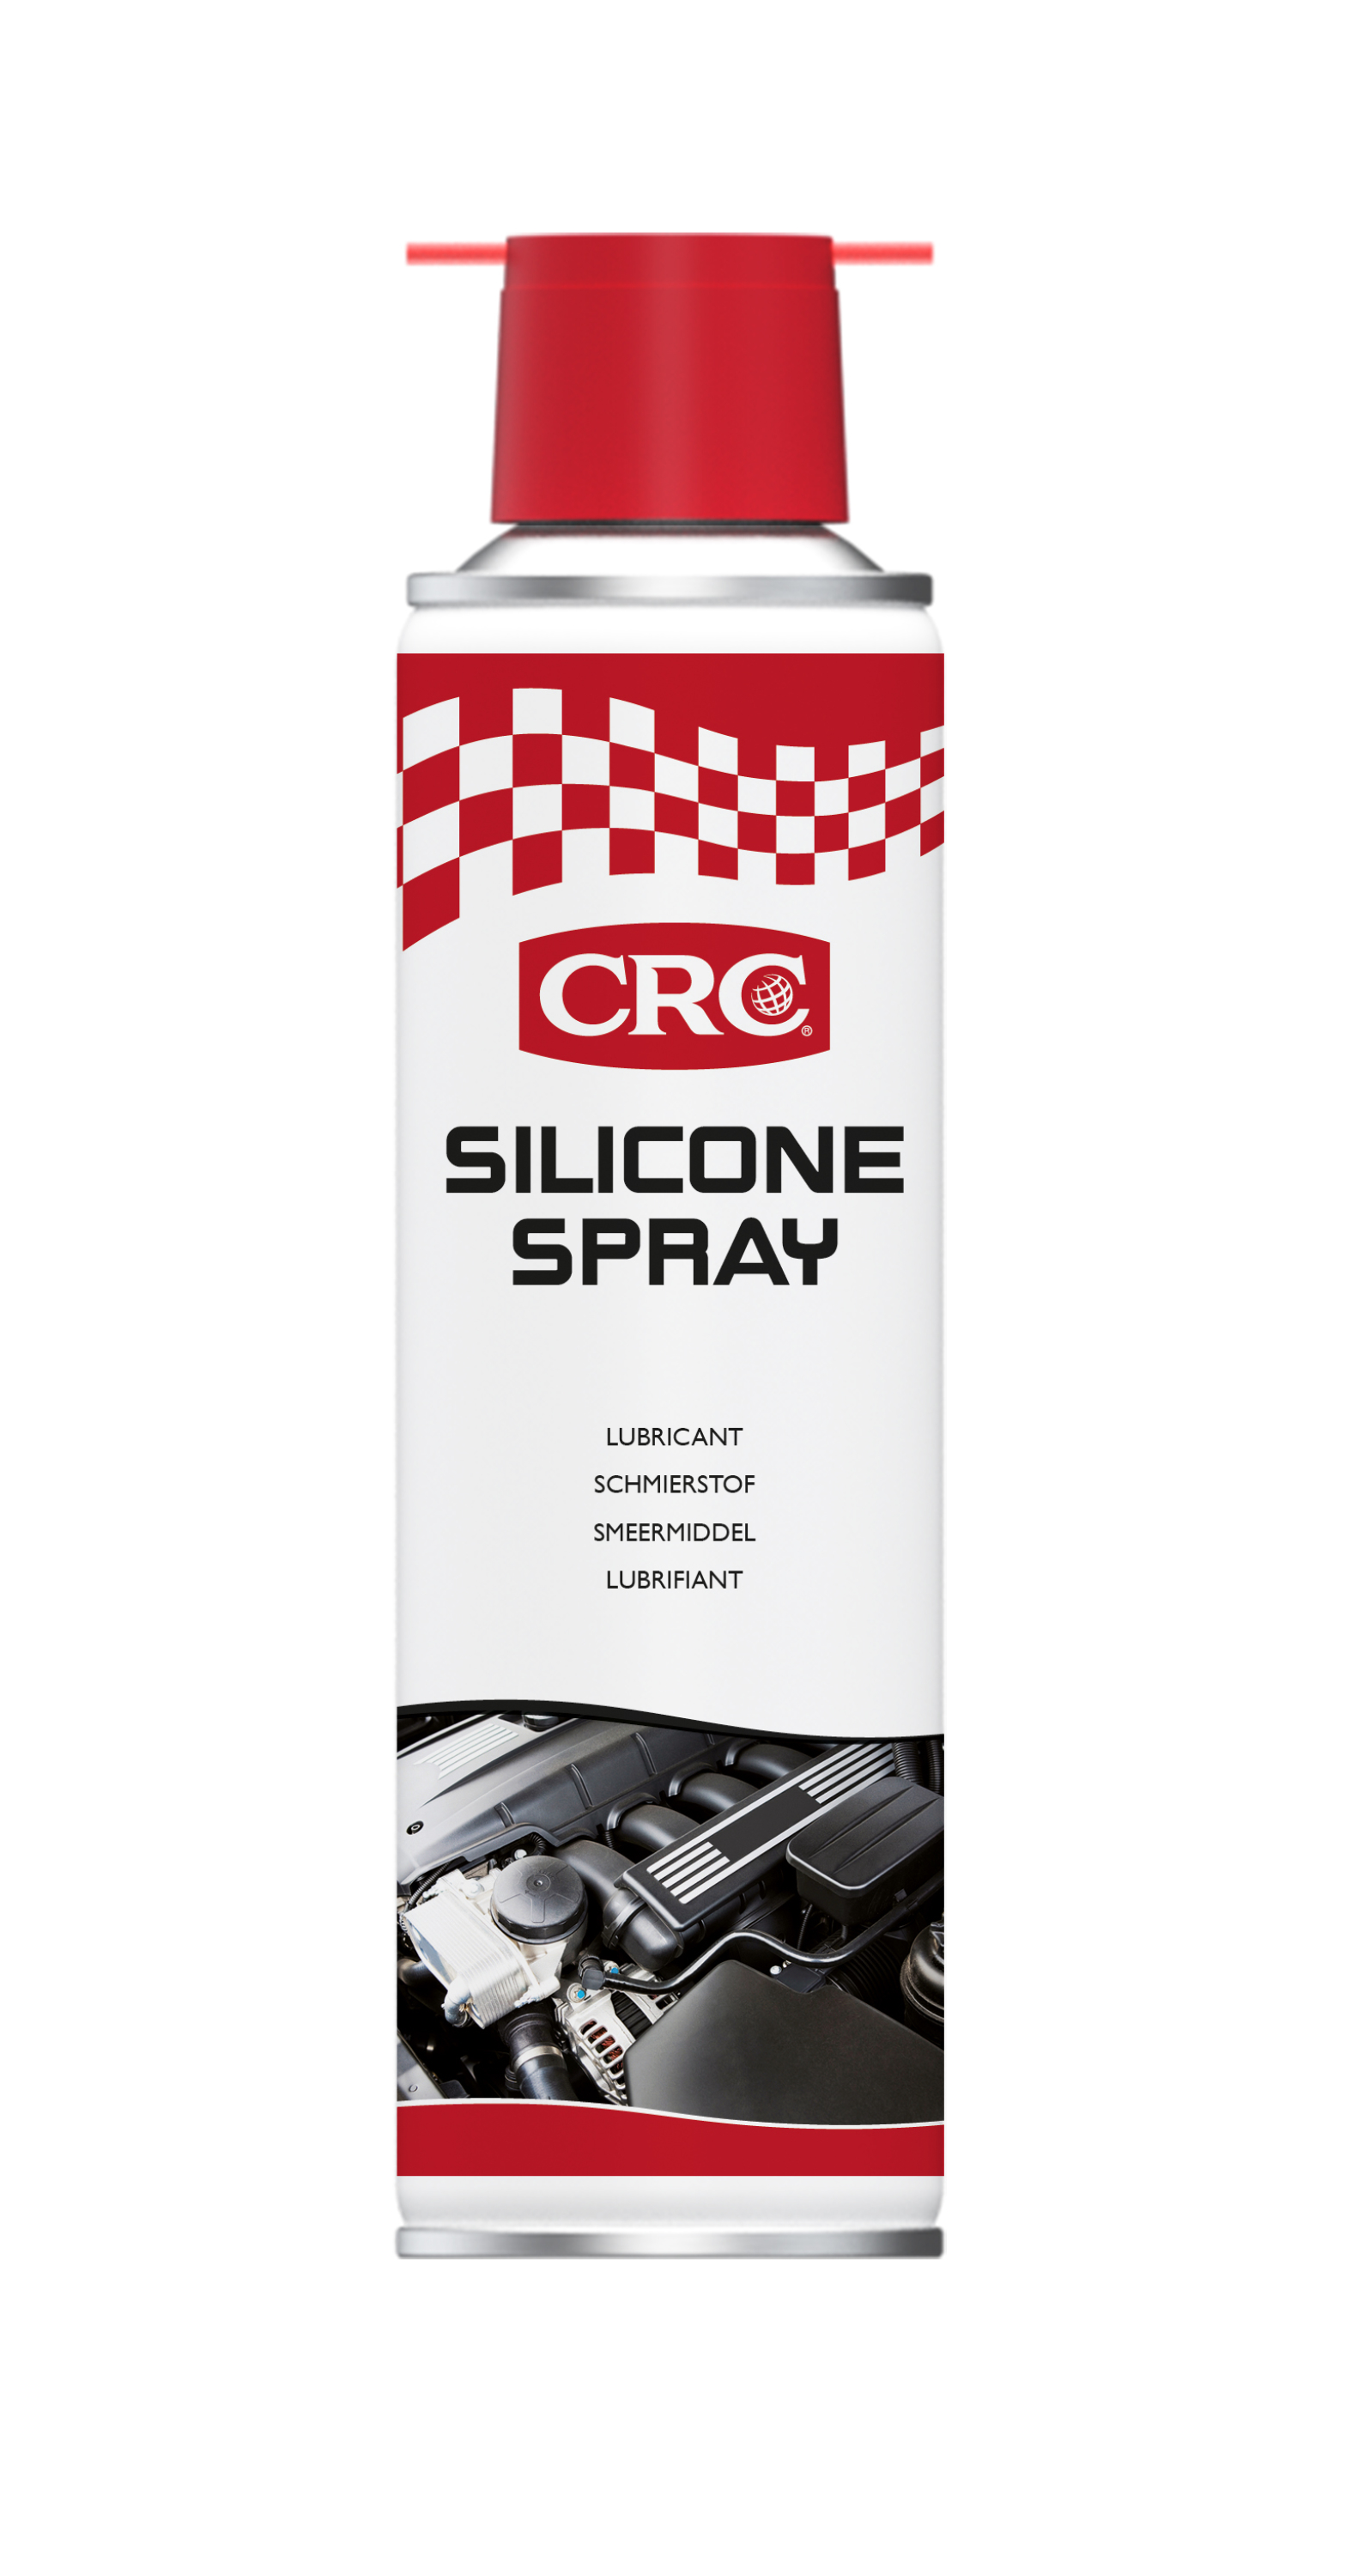 Silicone spray crc 250 ml